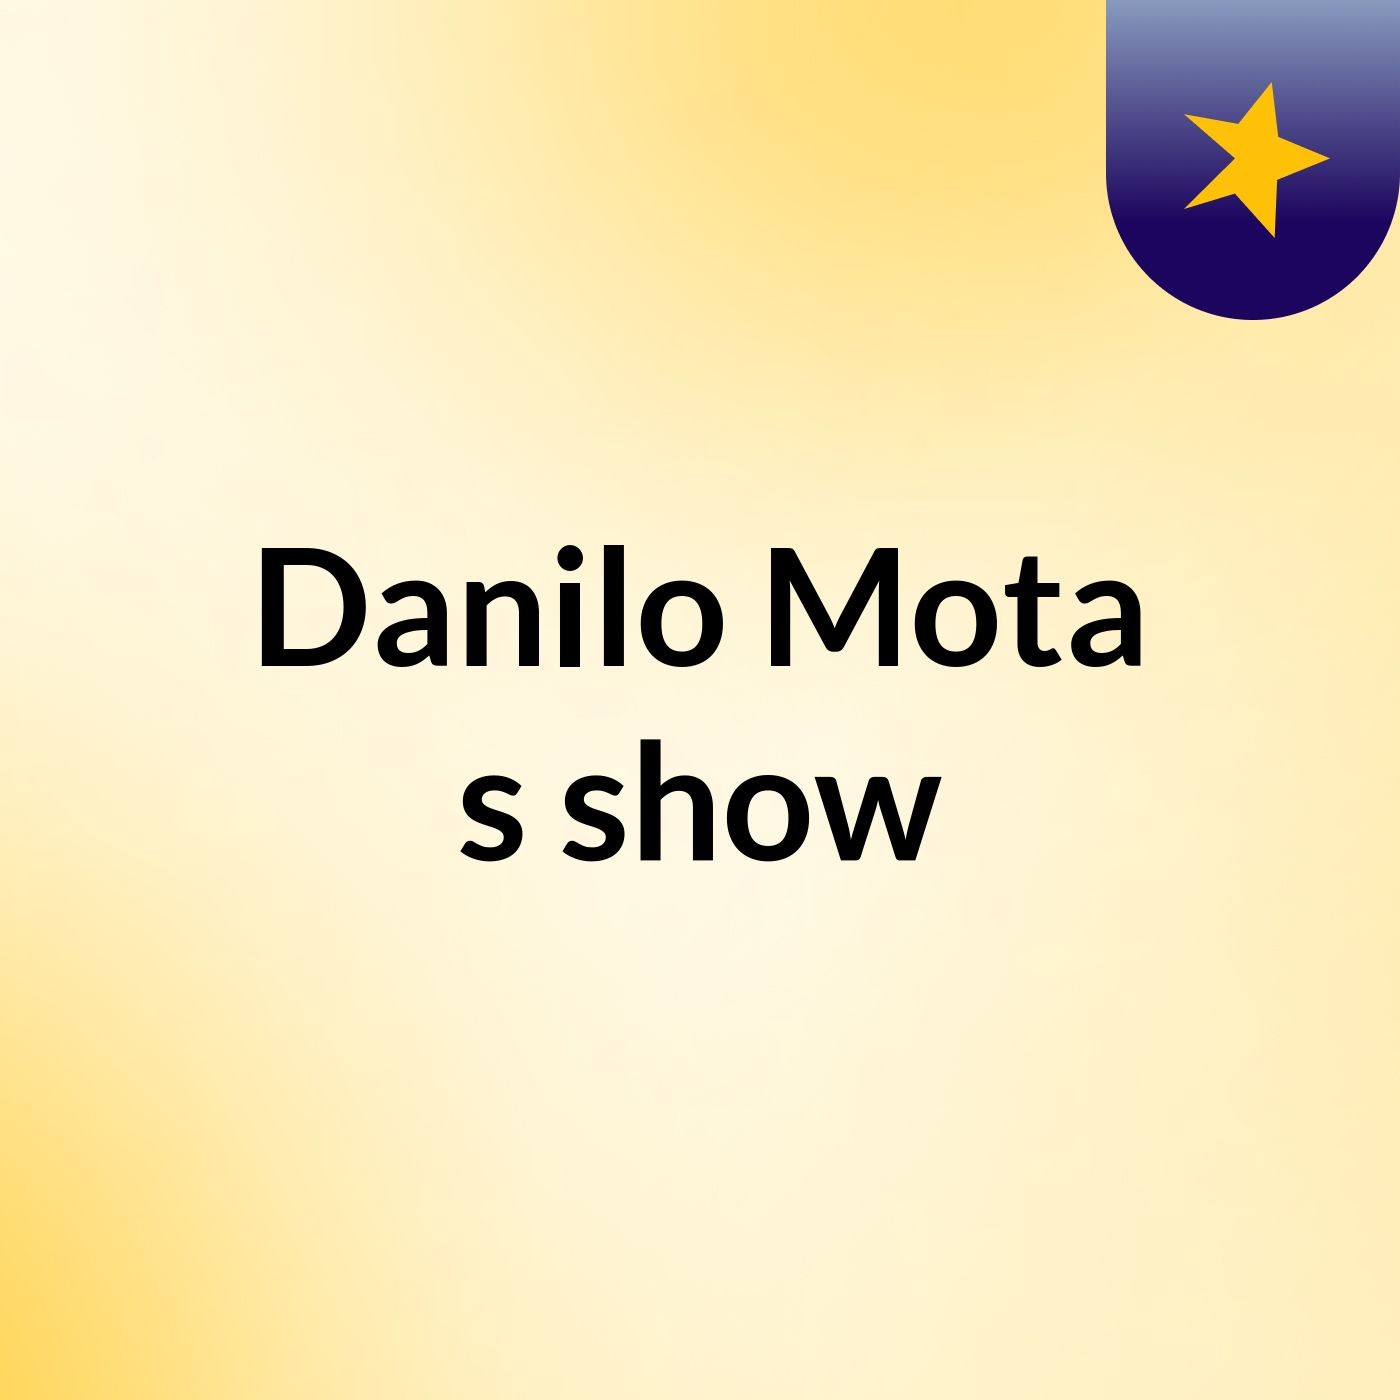 Danilo Mota's show